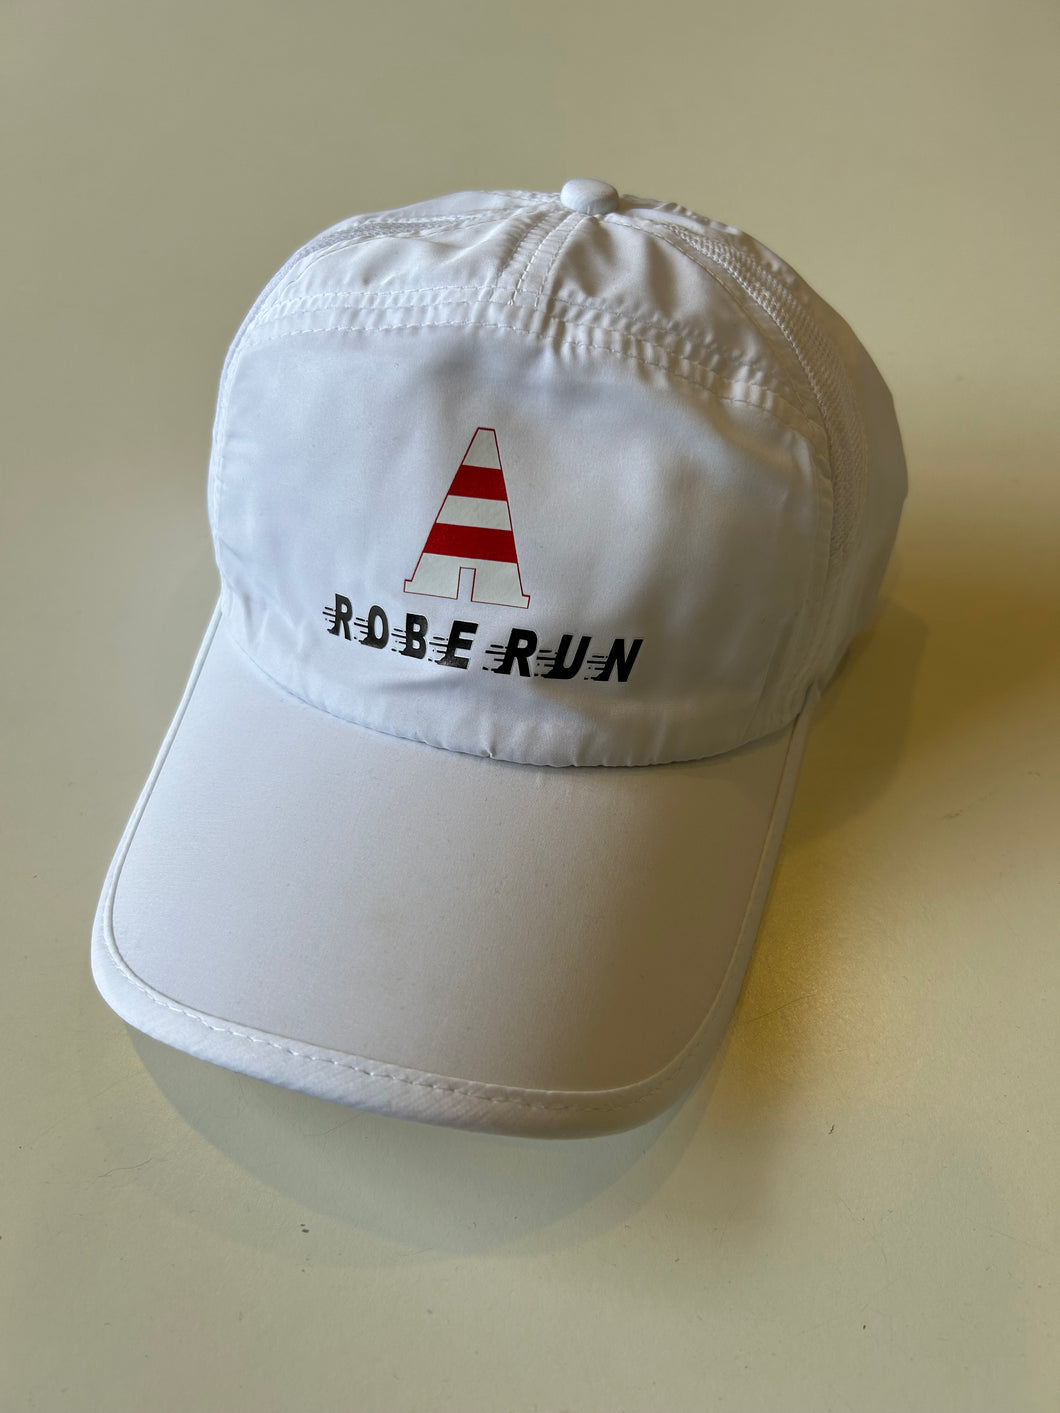 Robe Run Running Caps